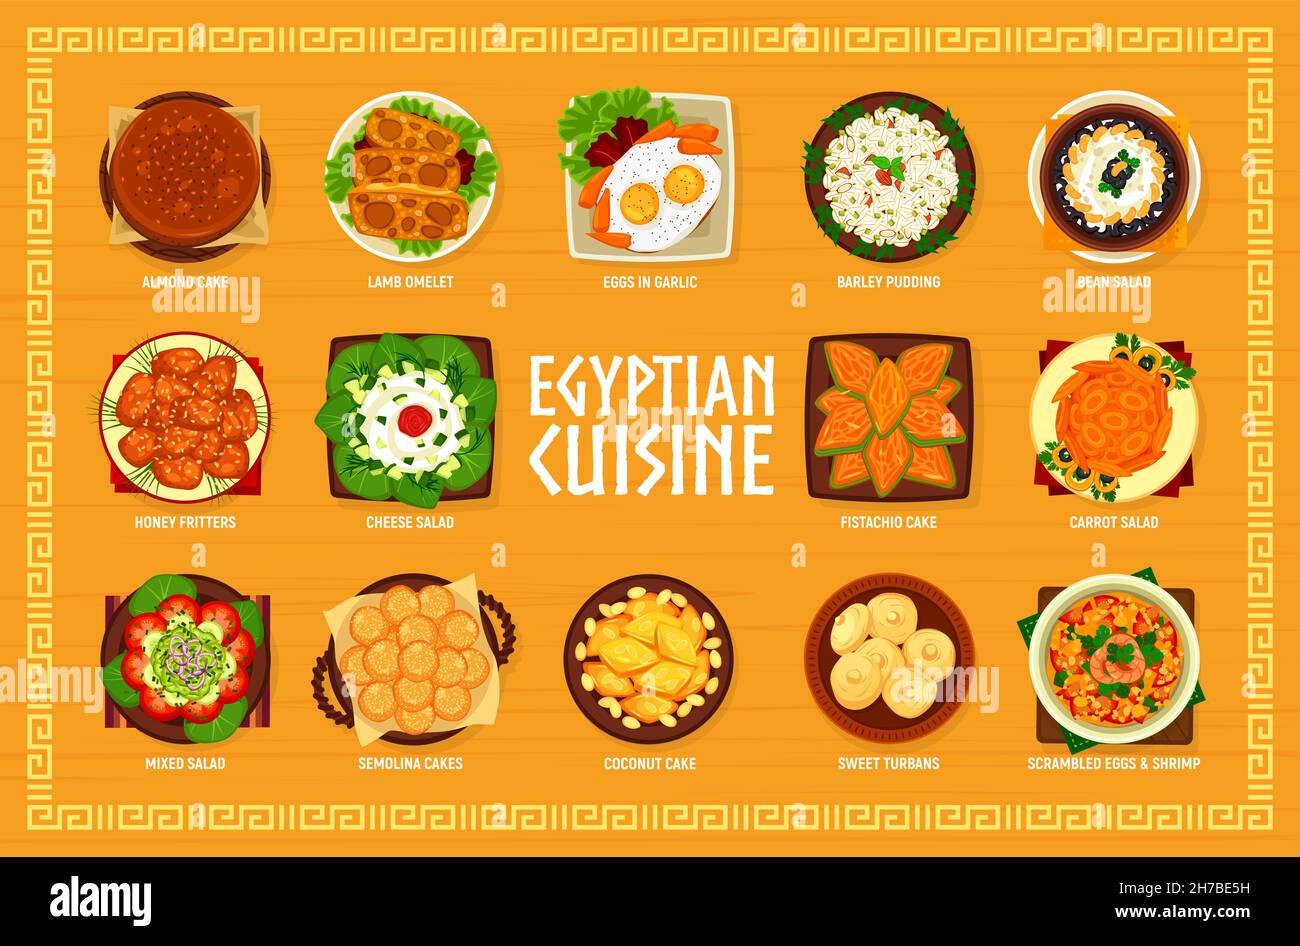 Menu de cuisine égyptienne.Gâteaux à la noix de coco, aux amandes et à la semoule, omelette d'agneau, œufs en beignets à l'ail et au miel, pudding, turbans doux et brouillés Illustration de Vecteur